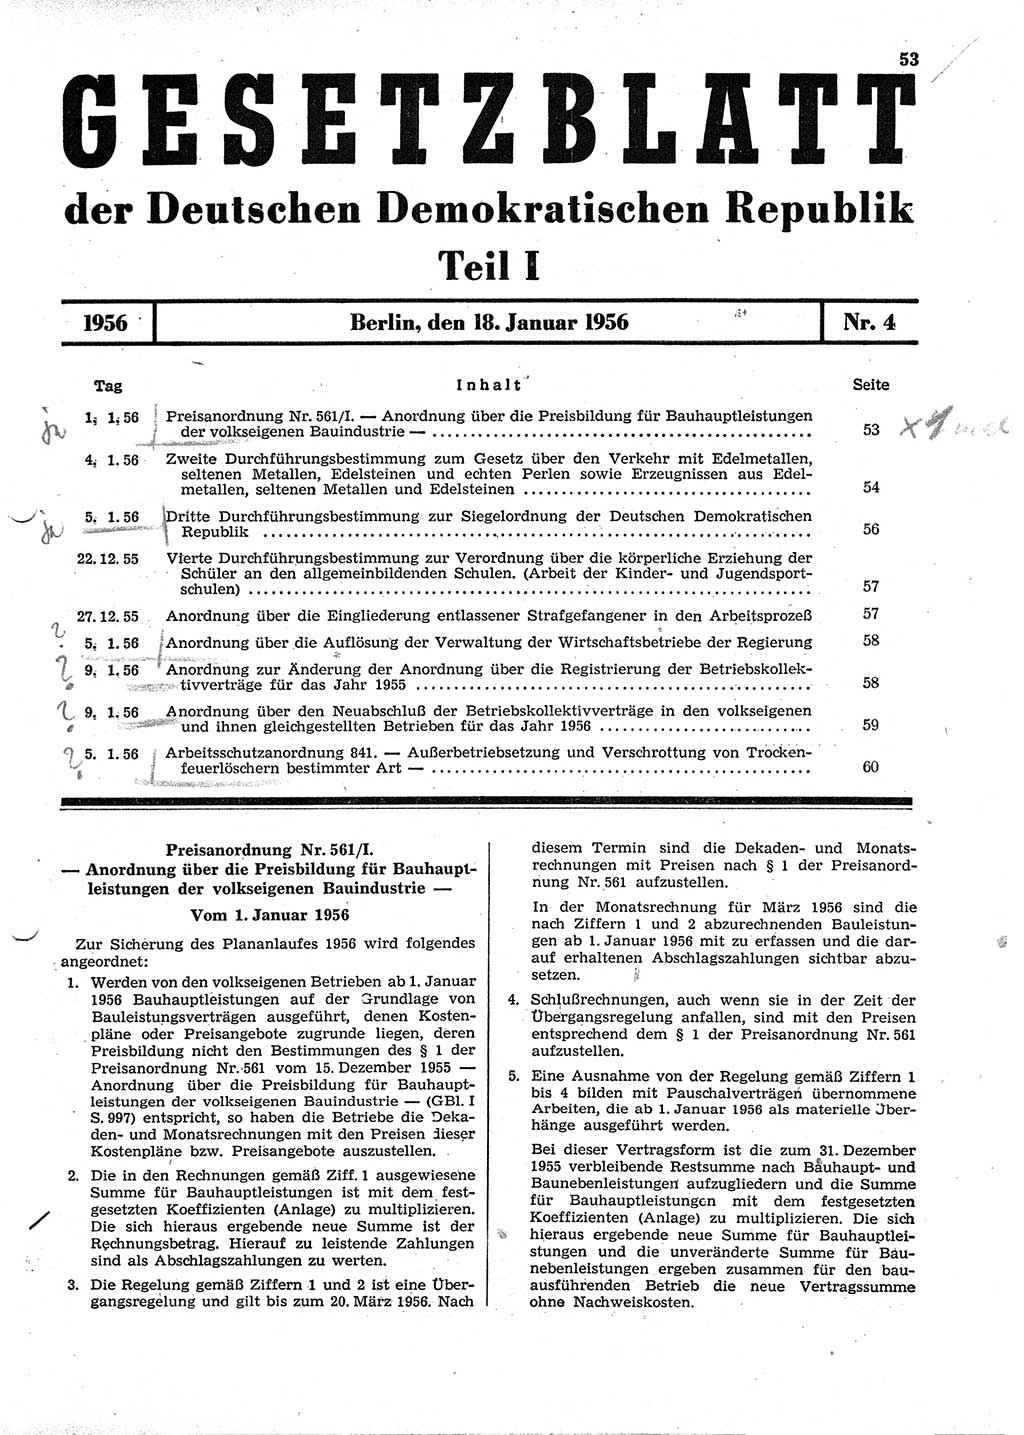 Gesetzblatt (GBl.) der Deutschen Demokratischen Republik (DDR) Teil Ⅰ 1956, Seite 53 (GBl. DDR Ⅰ 1956, S. 53)